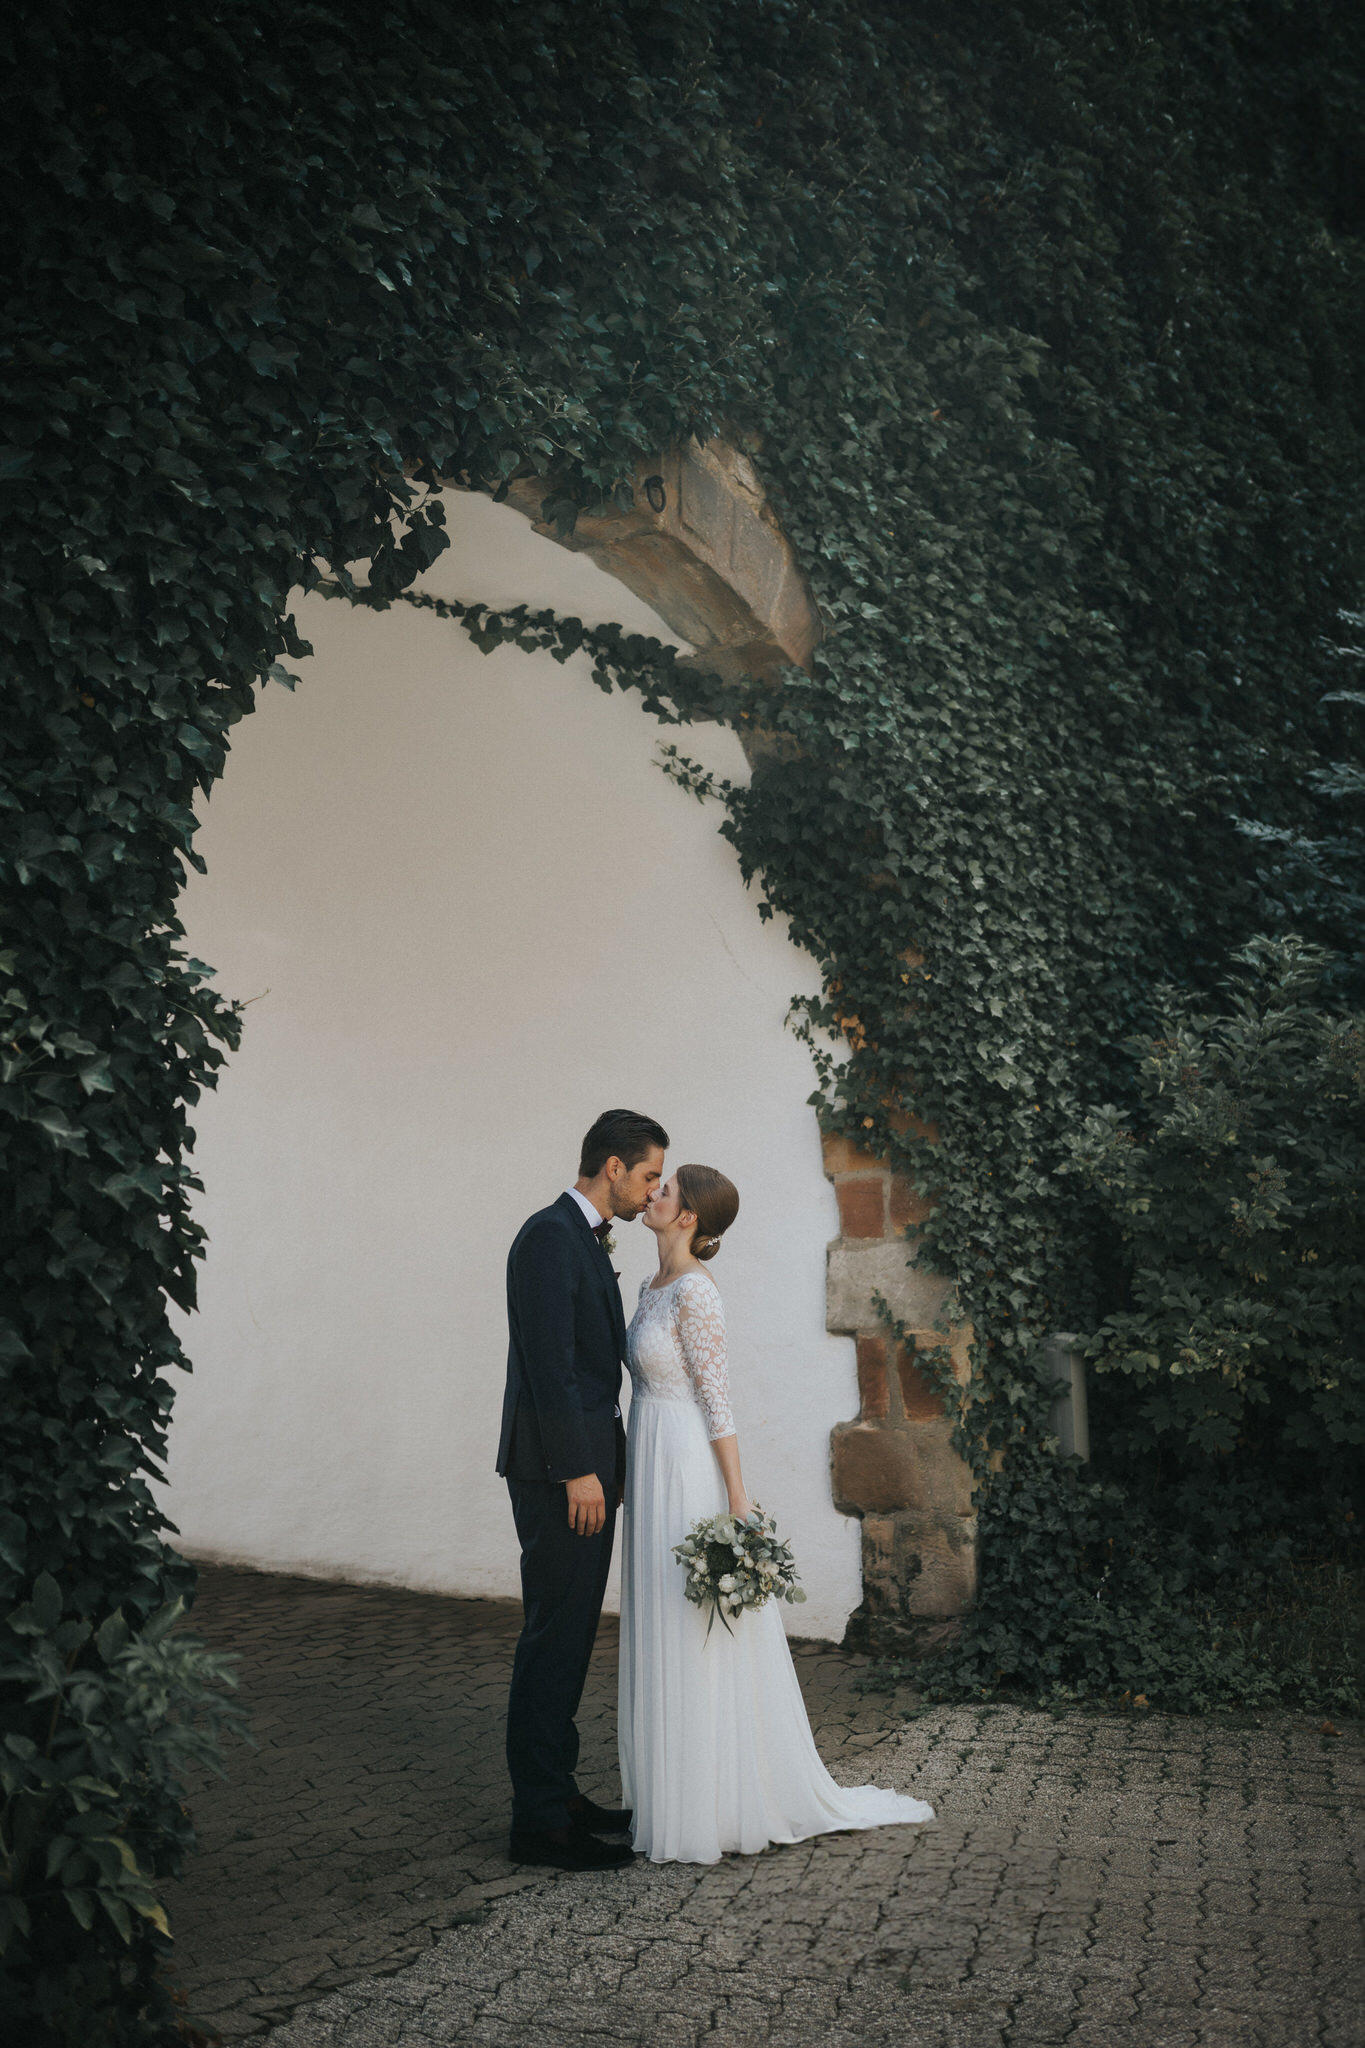 Verträumte Brautpaarfotos am Schloss Friedrichstein – Das frisch vermählte Paar genießt intime Momente der Zweisamkeit inmitten der historischen Atmosphäre, ein wundervolles Spiel aus Liebe und Geschichte